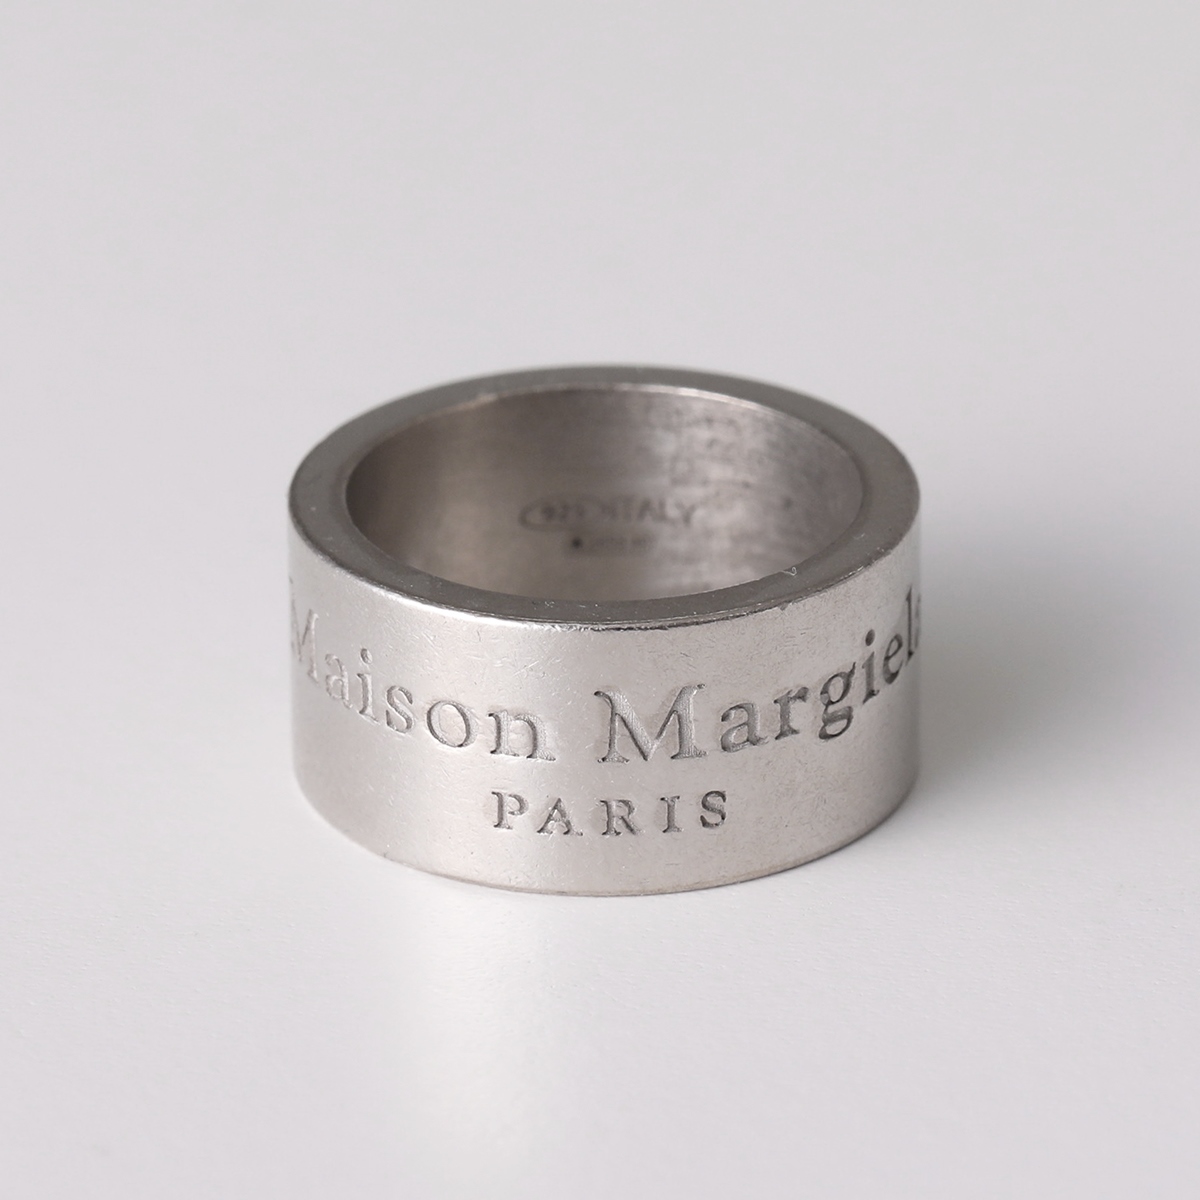 MAISON MARGIELA メゾンマルジェラ 11 リング SM1UQ0082 SV0158 メンズ ラージ アクセサリー 指輪 ロゴ  シルバー925 silver925 951 | インポートセレクト musee